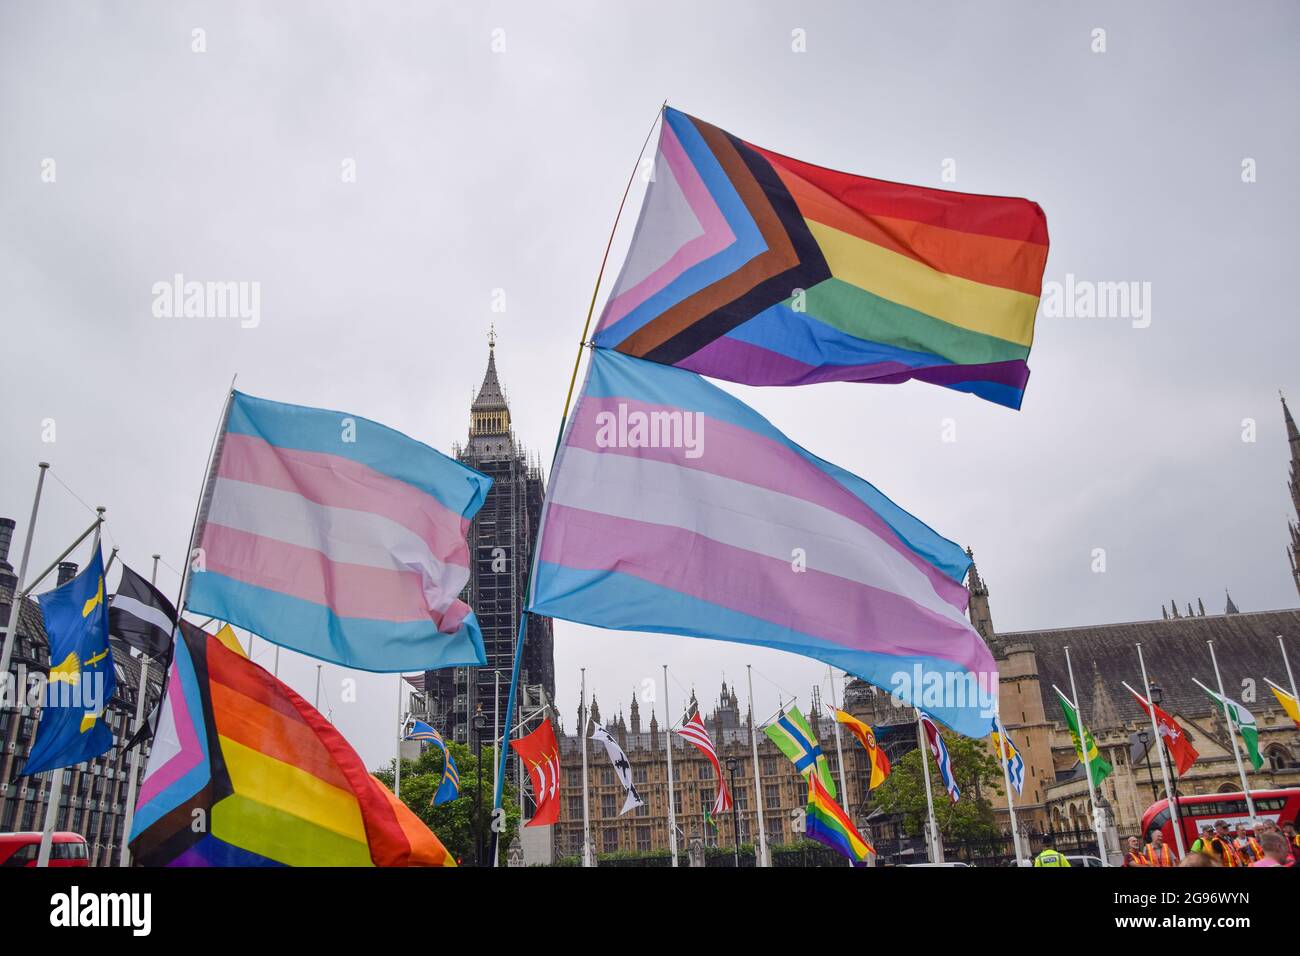 Londres, Royaume-Uni. 24 juillet 2021. Les drapeaux de la fierté et de la Transcanadienne sont visibles sur la place du Parlement lors de la manifestation Real Pride.des milliers de personnes ont défilé dans le centre de Londres pour soutenir les droits des LGBTQ, la diversité, l'inclusion et contre la transphobie croissante, et ce que beaucoup considèrent comme la commercialisation de la marche annuelle de la fierté. Crédit : SOPA Images Limited/Alamy Live News Banque D'Images